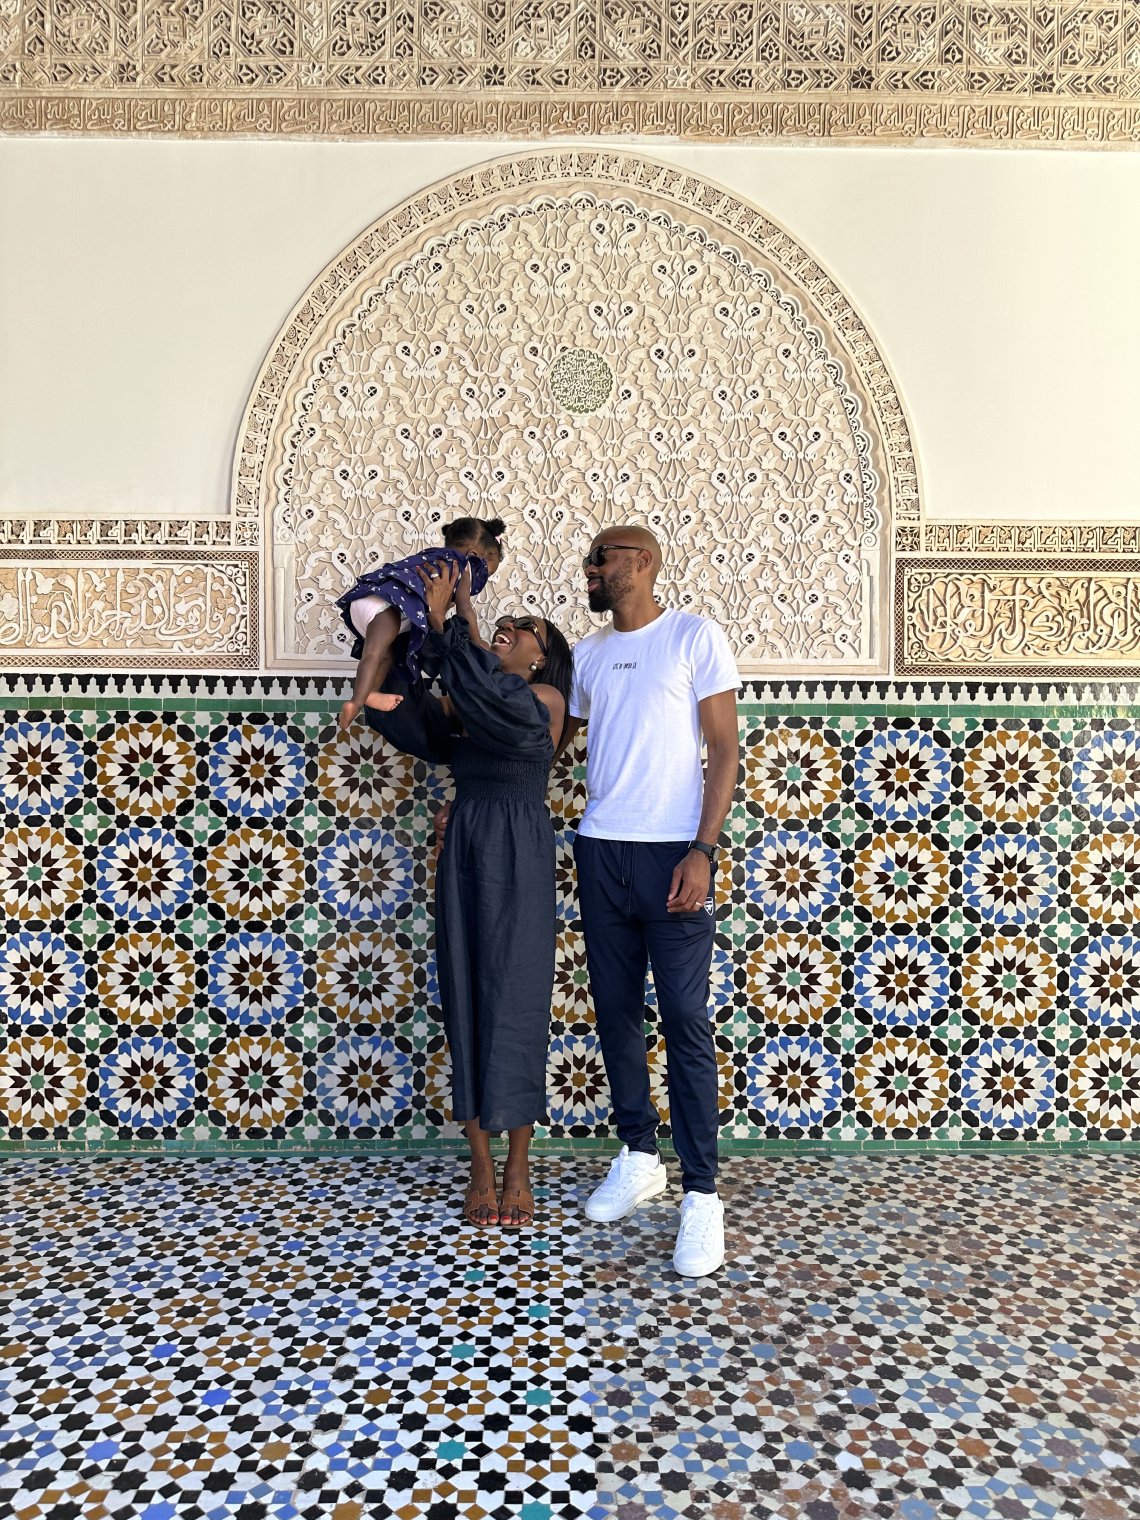 marrakech travel guide - lifewithbugo.com